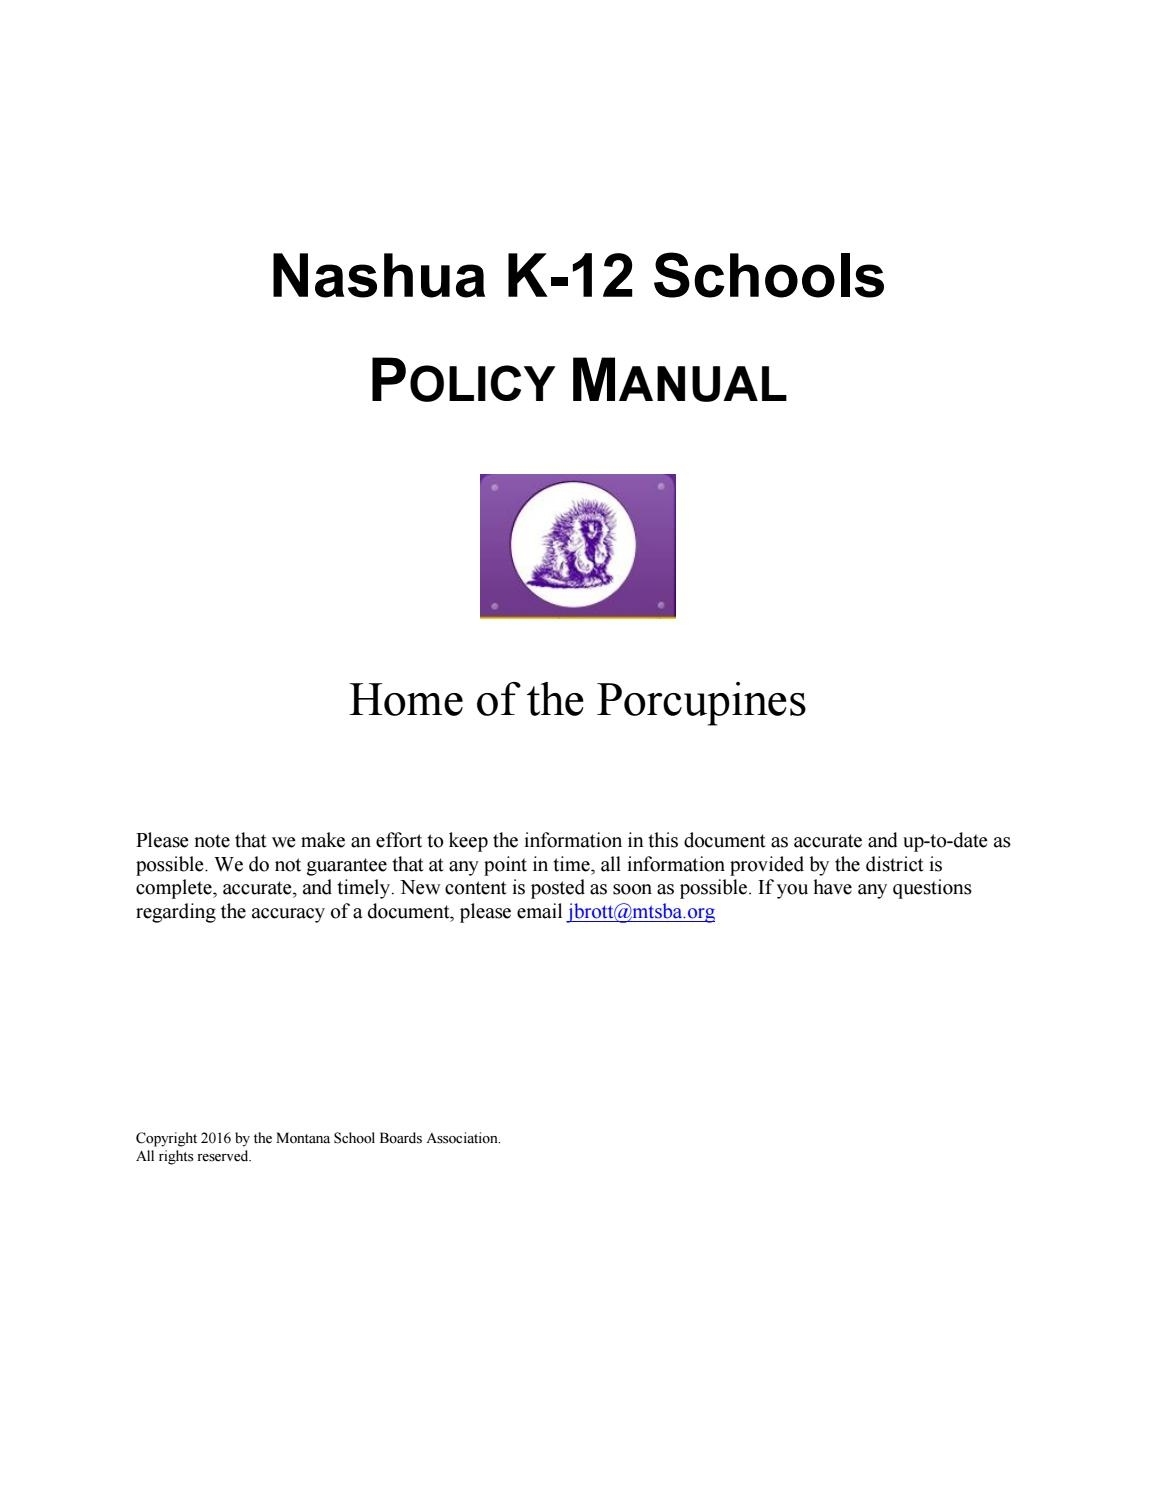 Nashua K 12 Schools Policy Manual By Montana School Boards School Calendar Nashua Nh